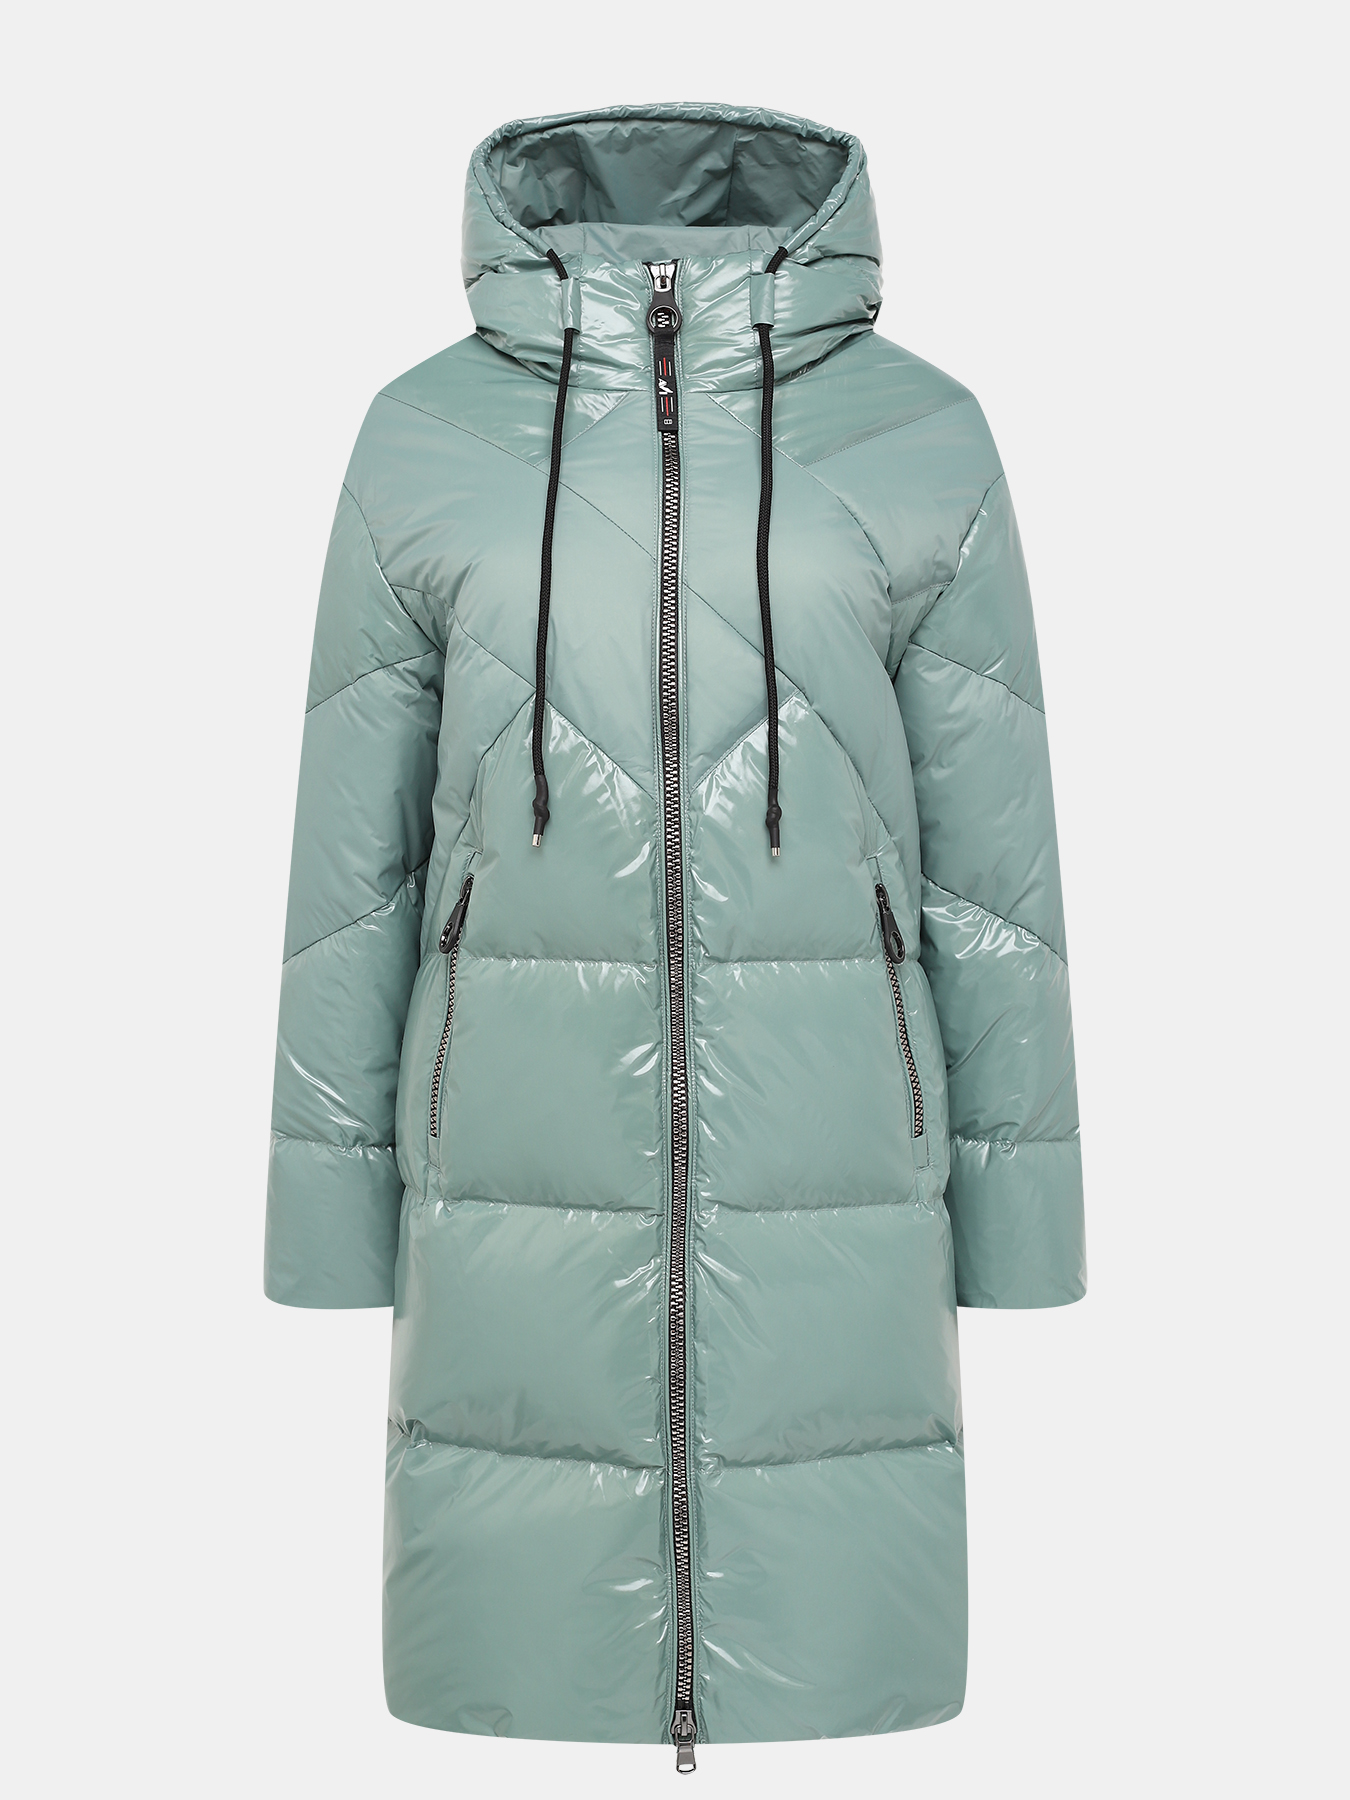 Пальто зимнее AVI 433635-024, цвет мятный, размер 52